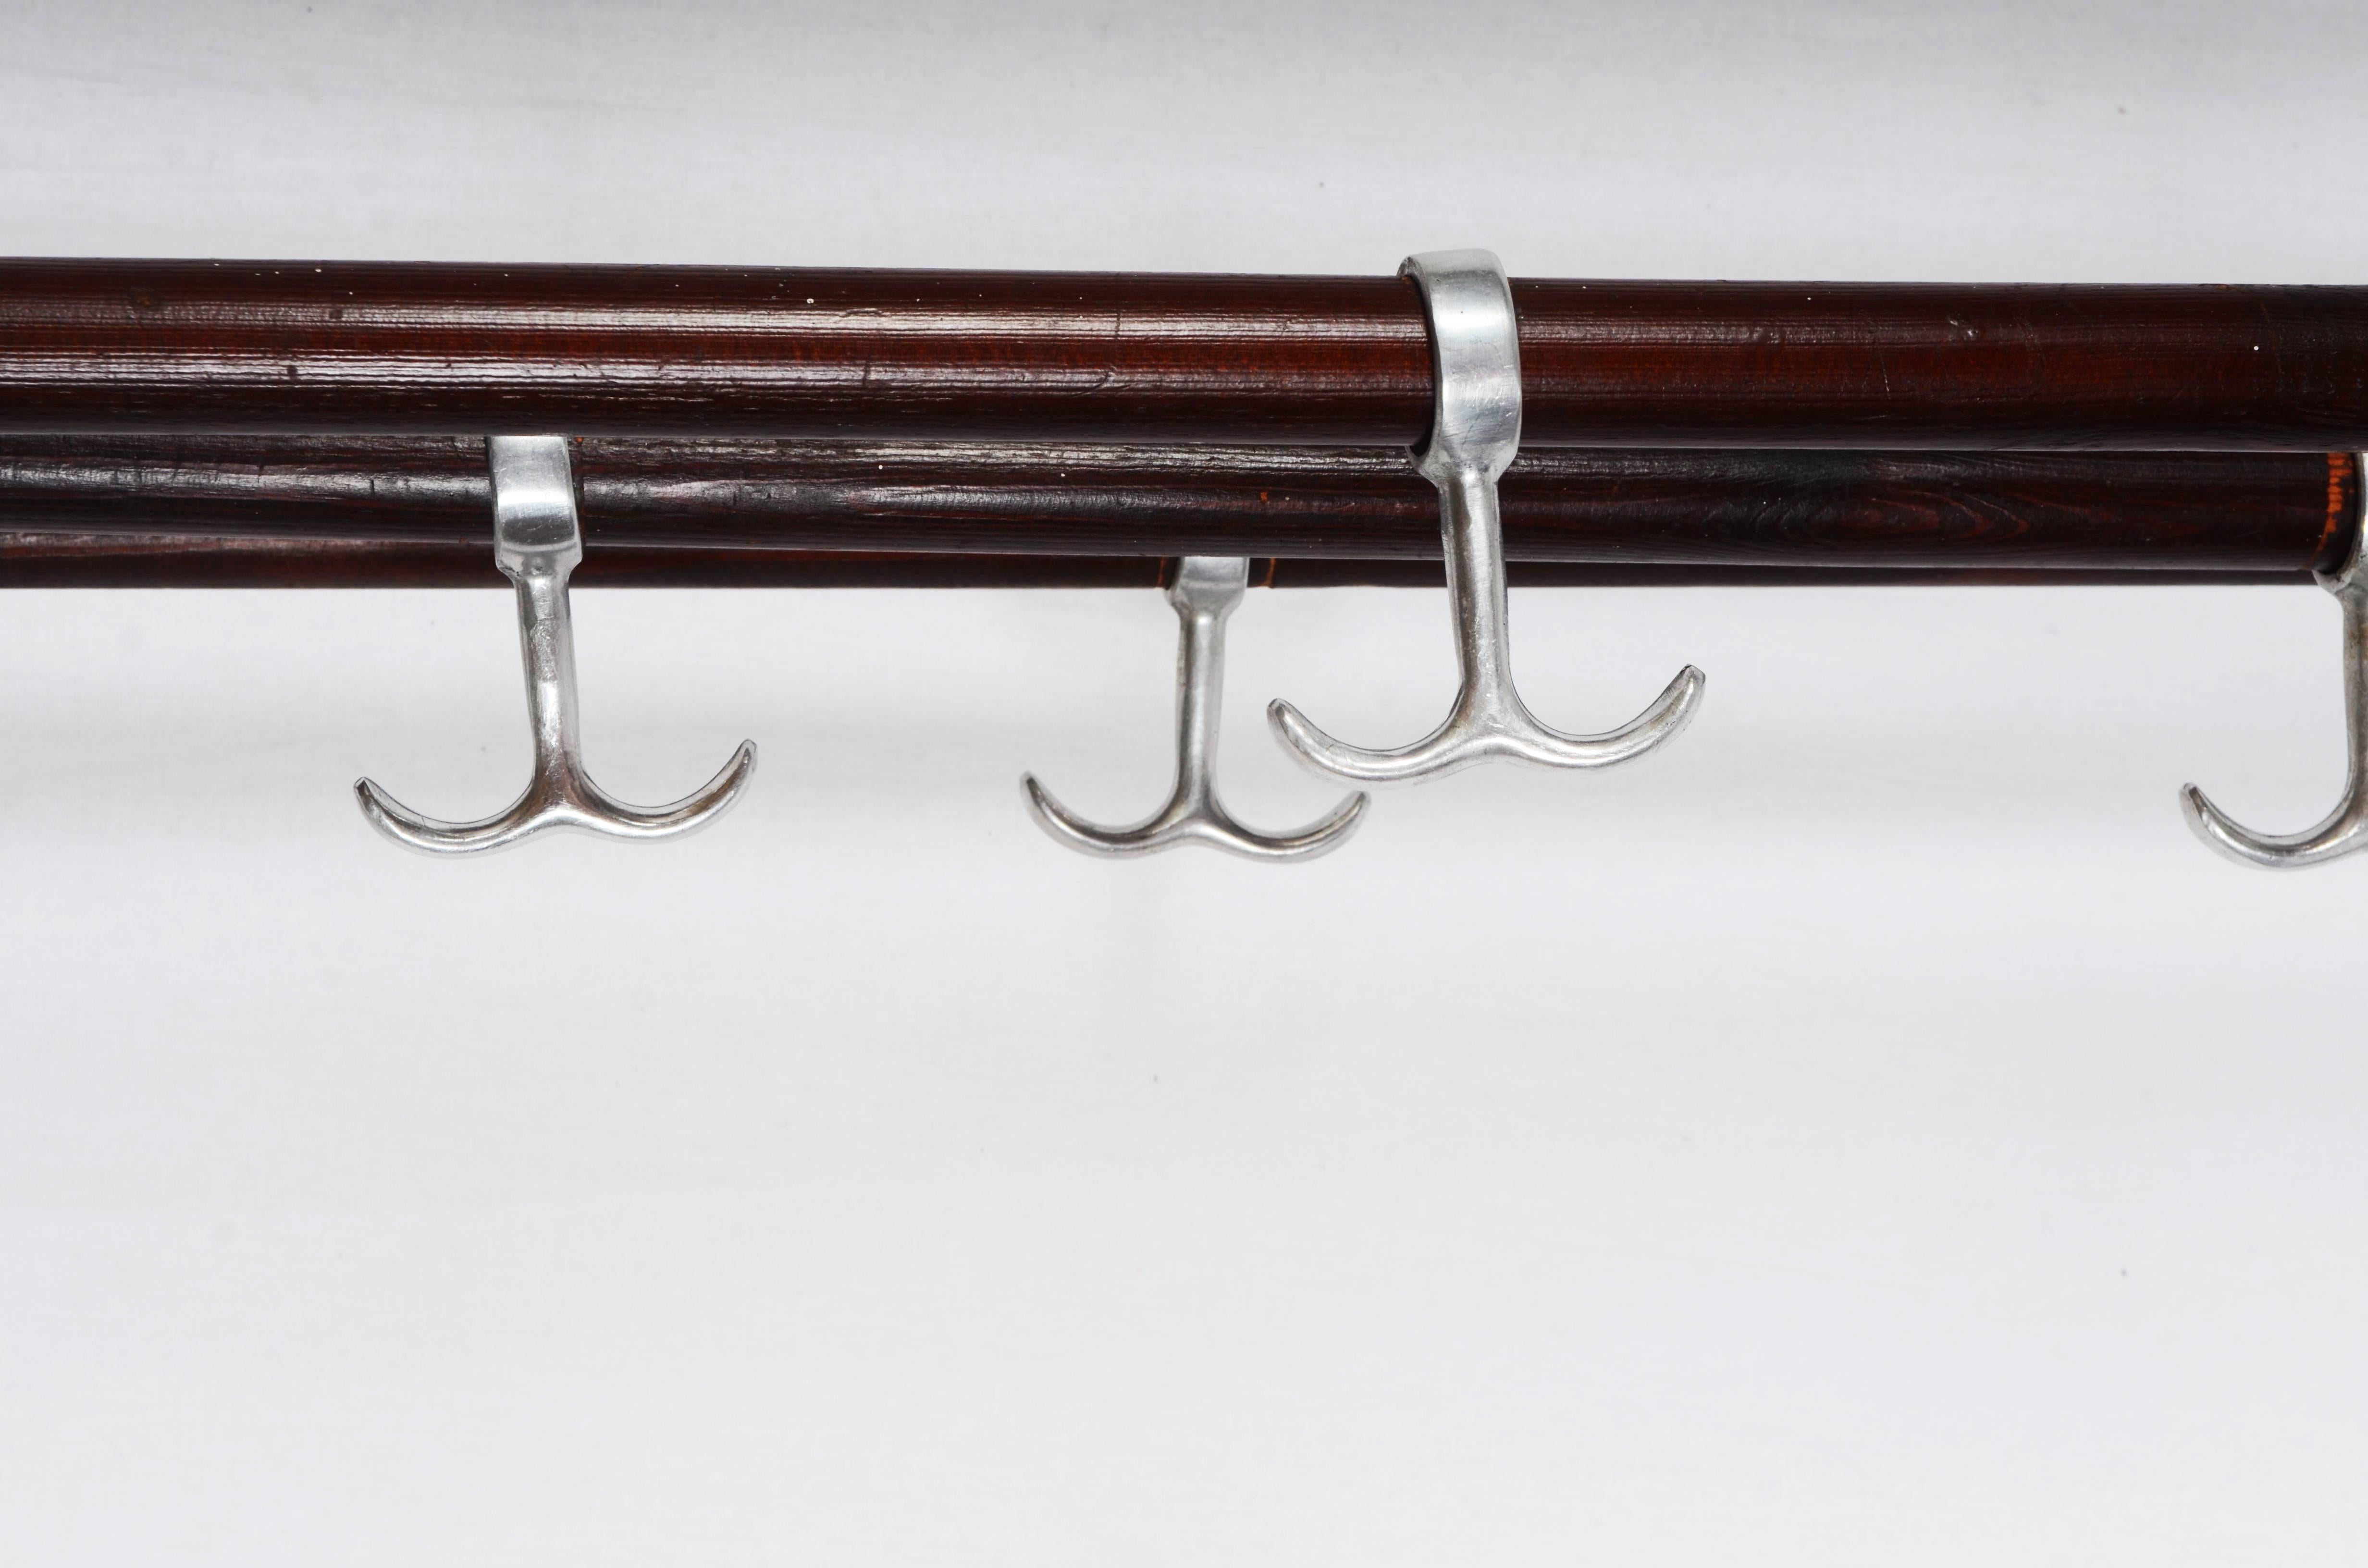 Porte-manteau fonctionnaliste suédois fabriqué dans les années 1930-1940. Supports et suspensions en aluminium sur des barres en bois de hêtre.
La longueur est de 100 cm et la profondeur de 25 cm.
 